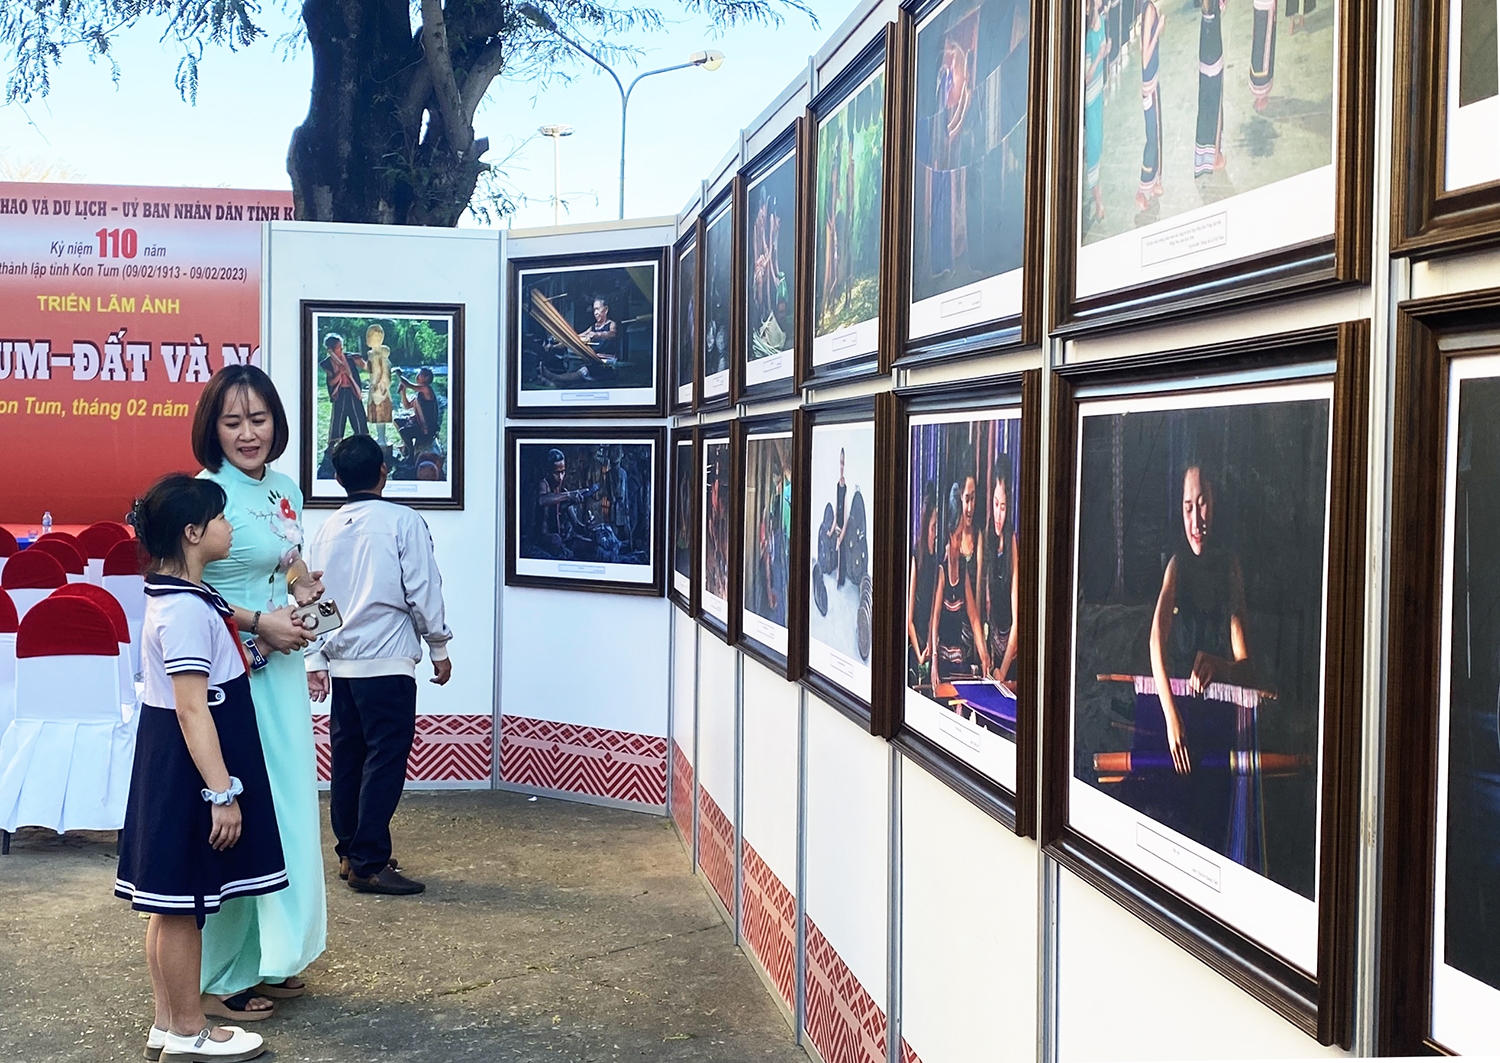 Triển lãm thu hút các em học sinh đến tham quan, tìm hiểu về lịch sử hình thành và phát triển tỉnh Kon Tum thông qua các tác phẩm nhiếp ảnh